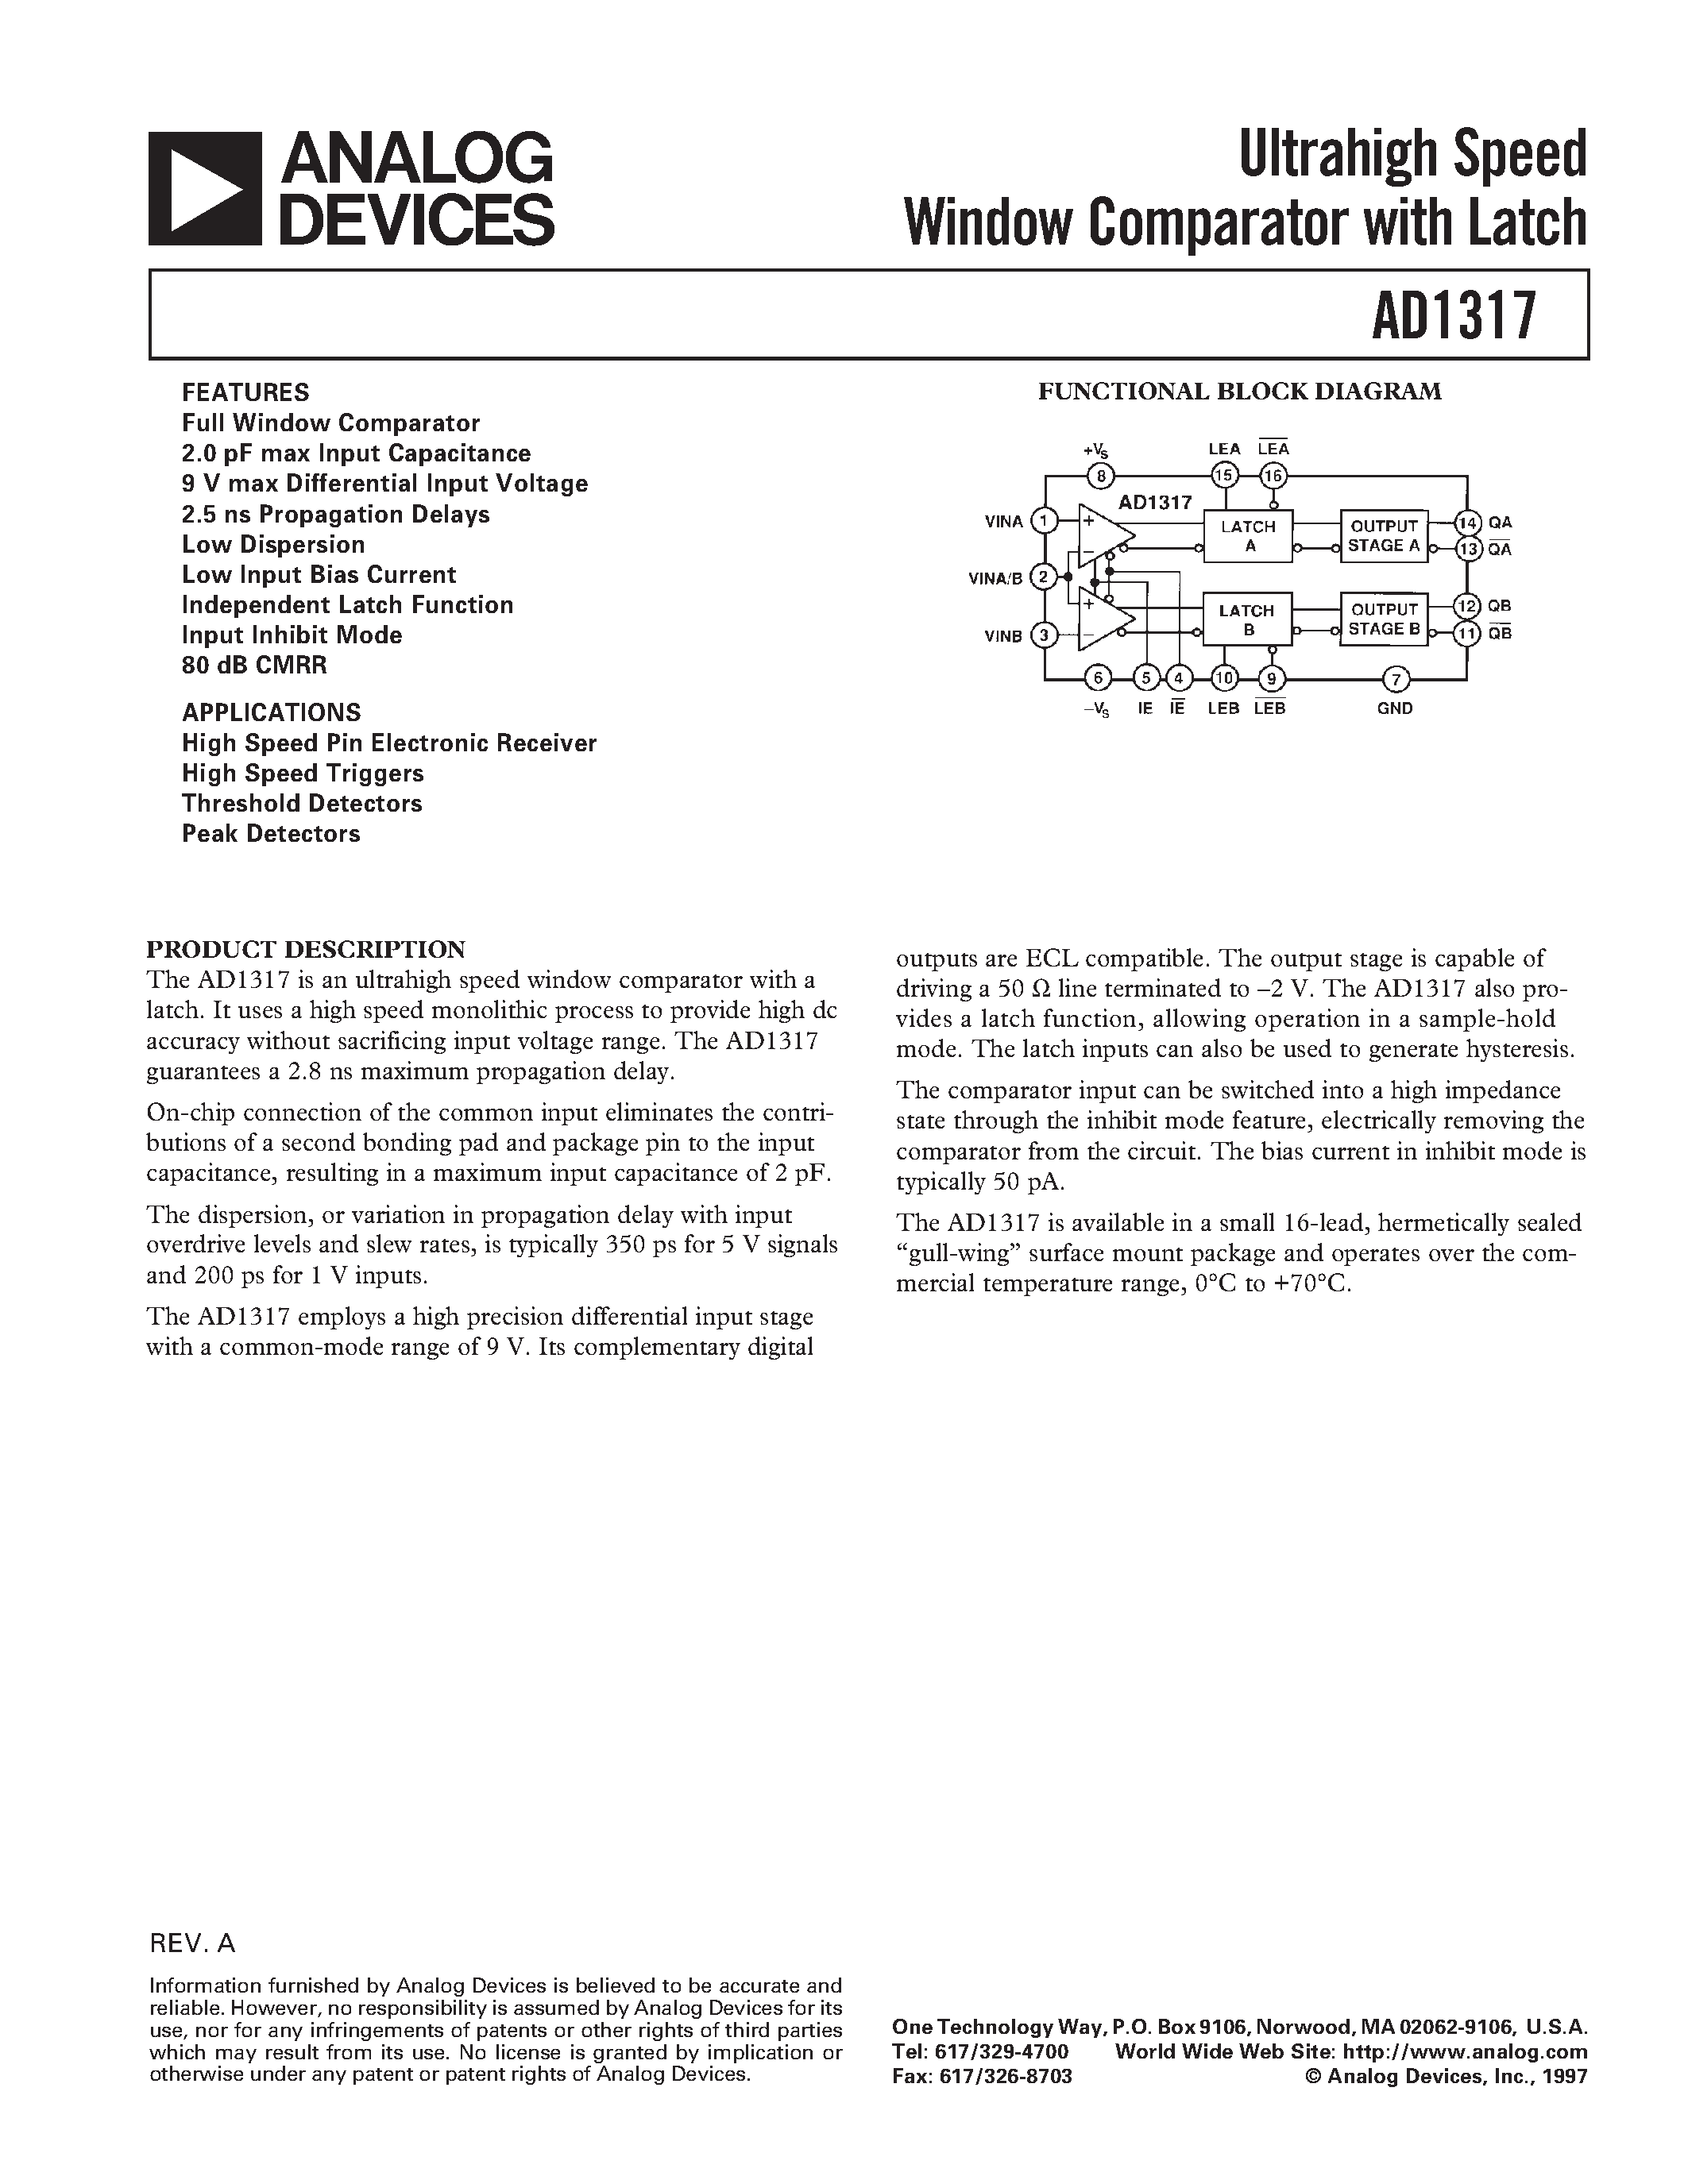 Даташит AD1317 - Ultrahigh Speed Window Comparator with Latch страница 1